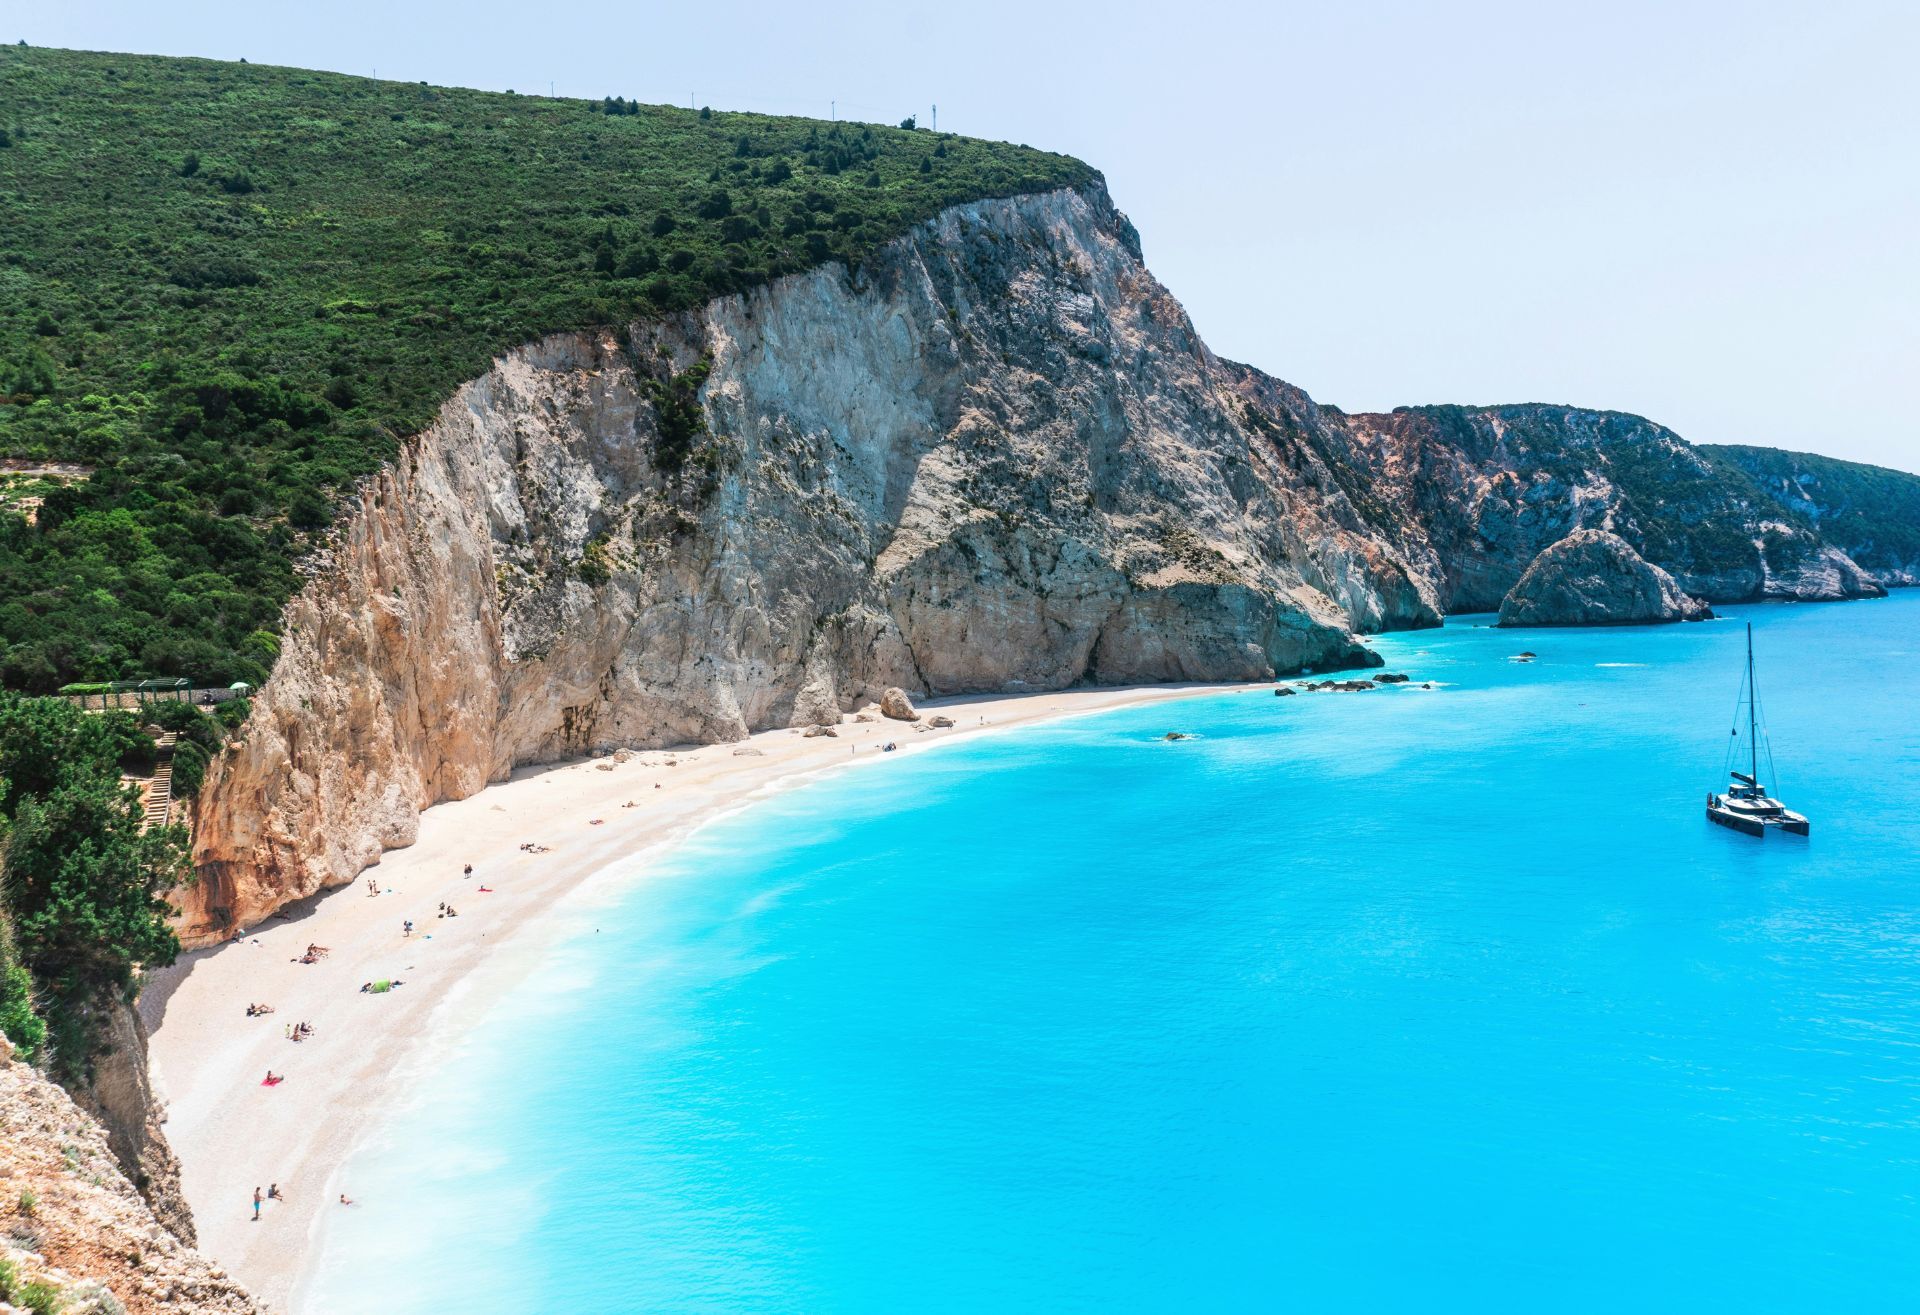 Πόρτο Κατσίκι, μία από τις πιο όμορφες παραλίες της Μεσογείου βρίσκονται στη Λευκάδα